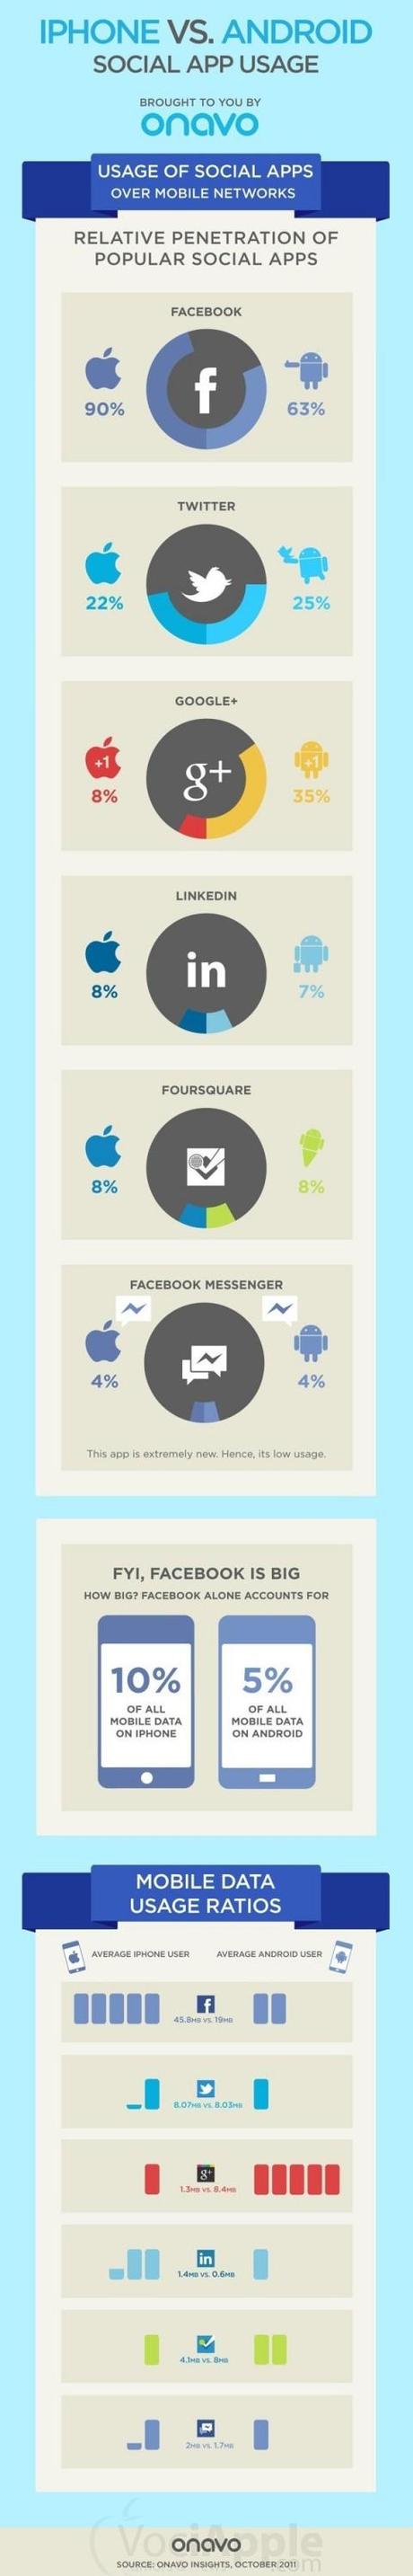 Le “abitudini sociali” sulla rete degli utenti Android e iPhone!